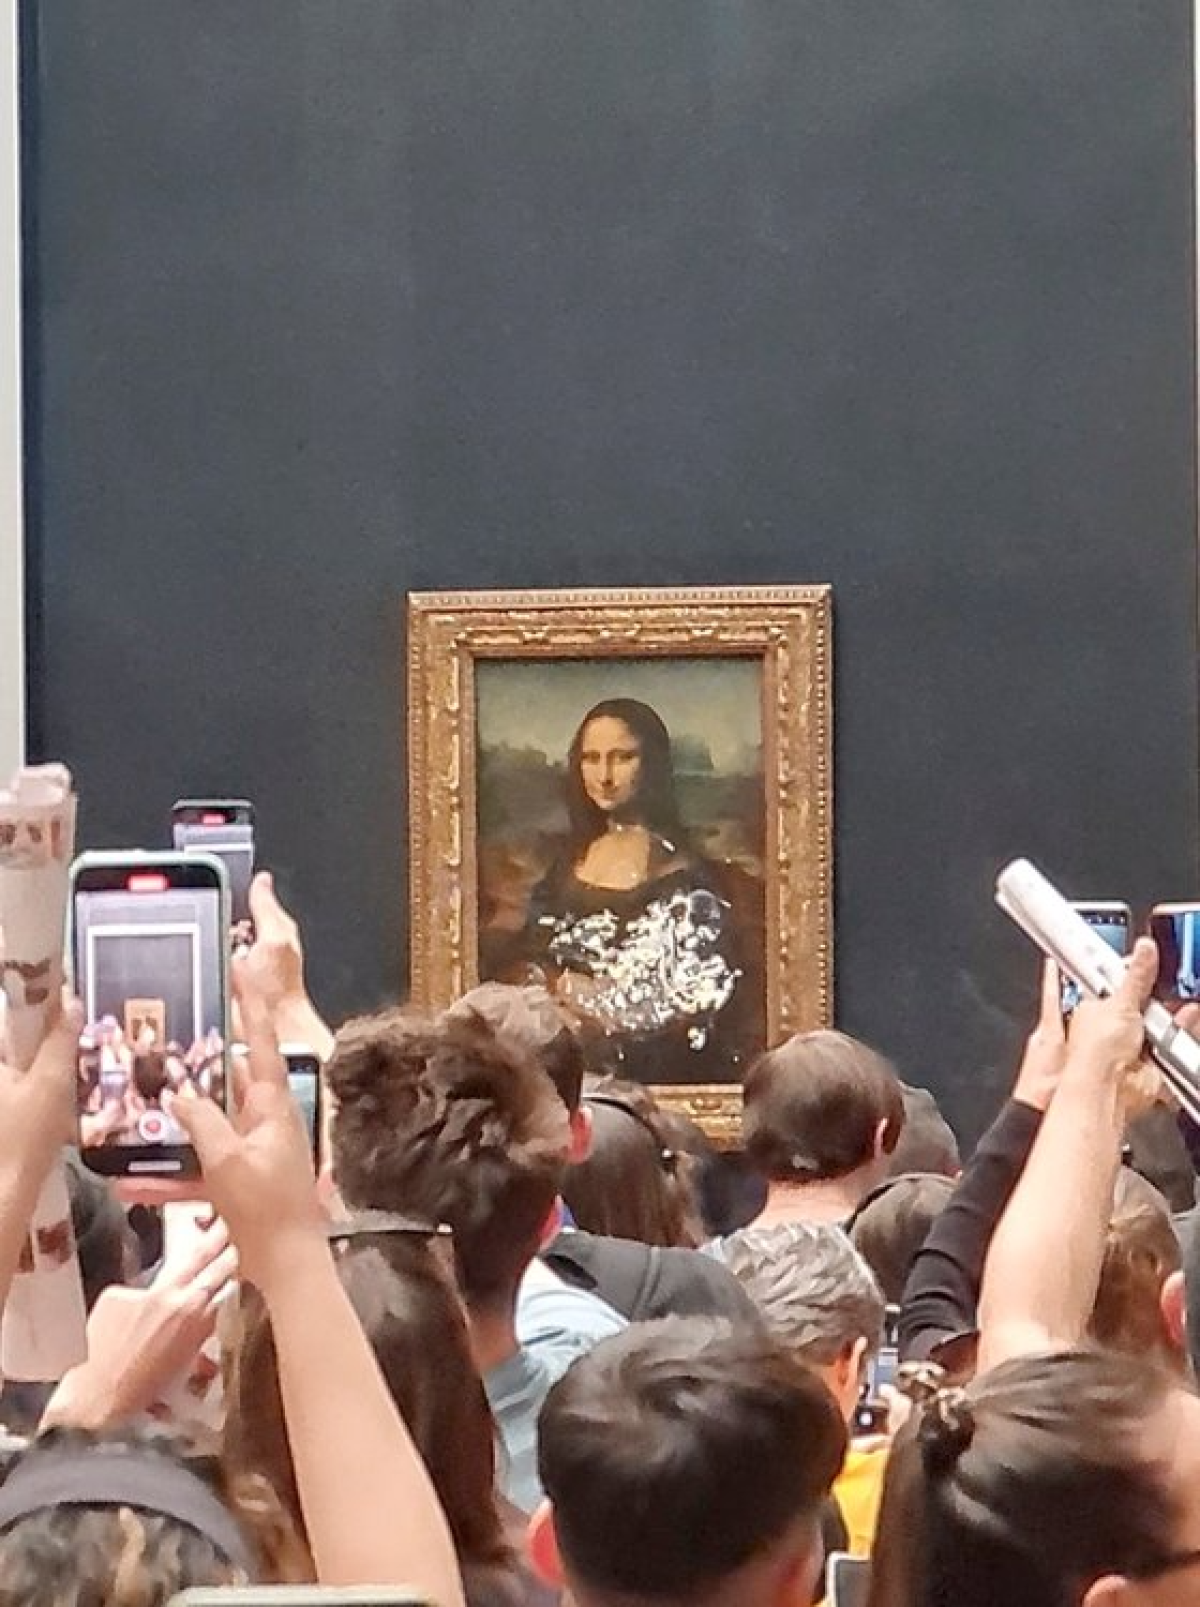 지난 29일(현지시간) 할머니로 분장한 남성이 프랑스 파리 루브르 박물관에 전시 중인 레오나르도 다빈치의 작품 ‘모나리자’에 케이크를 던졌다. 로이터=연합뉴스